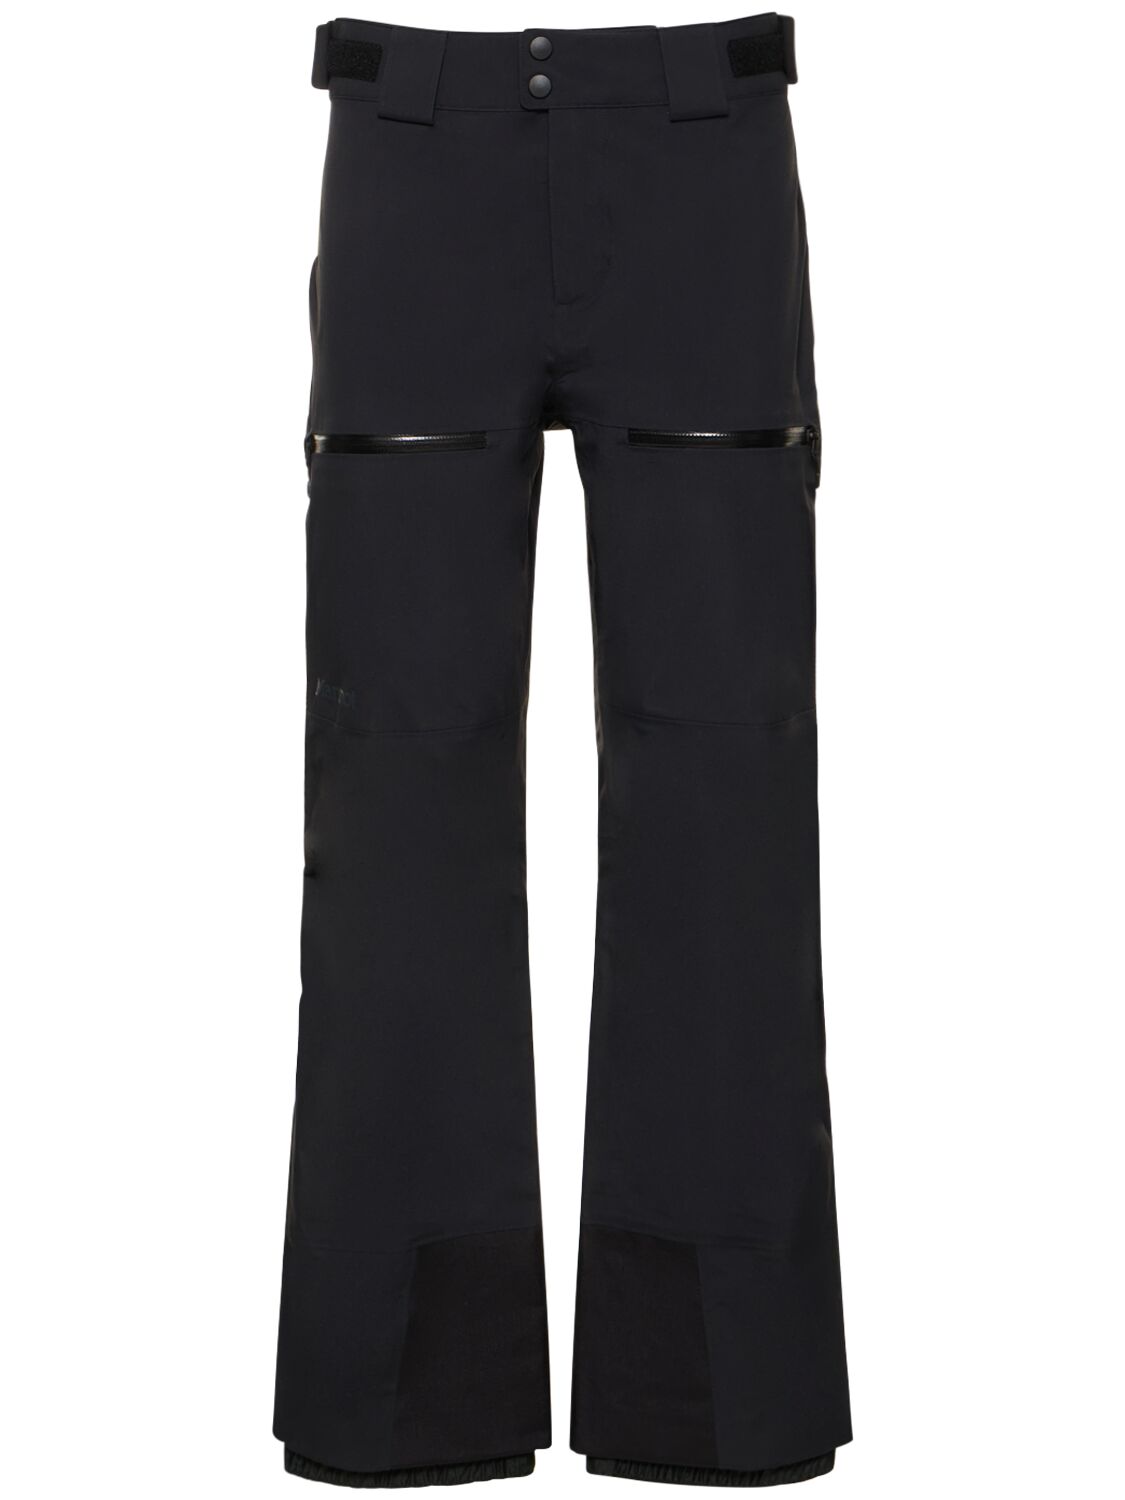 Marmot Orion Gtx Waterproof Nylon Pants In Black